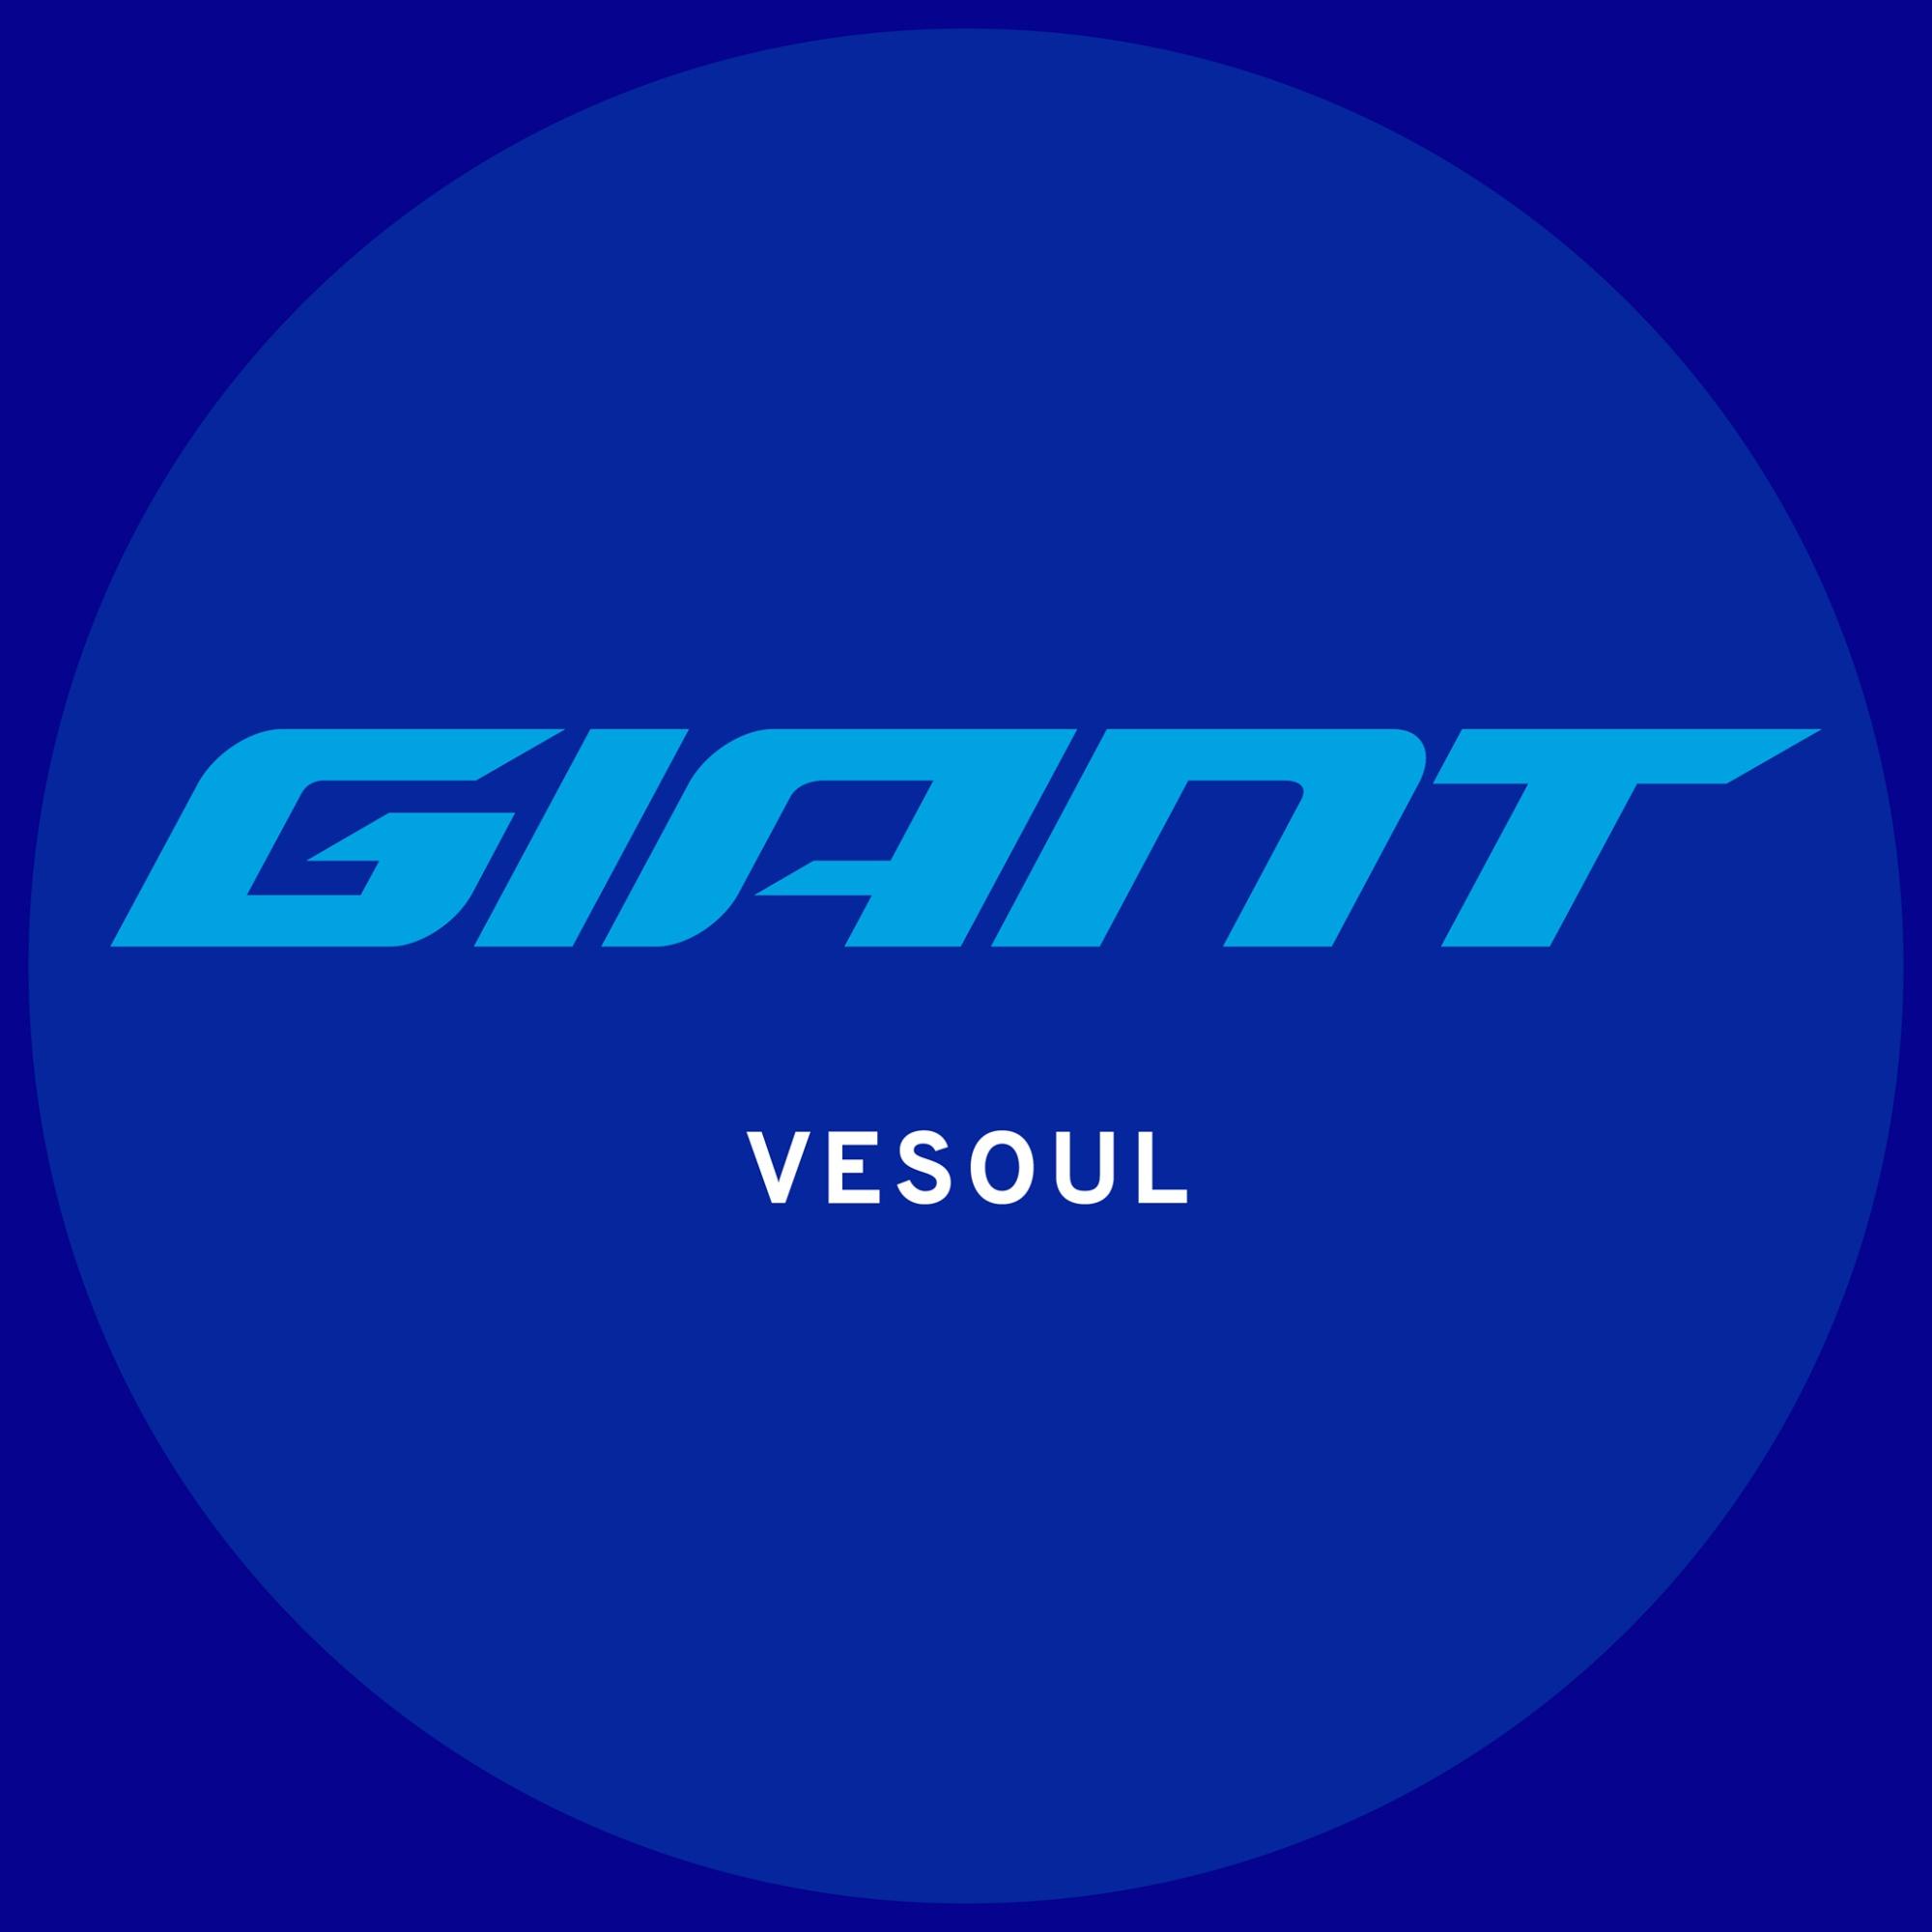 Giant Vesoul